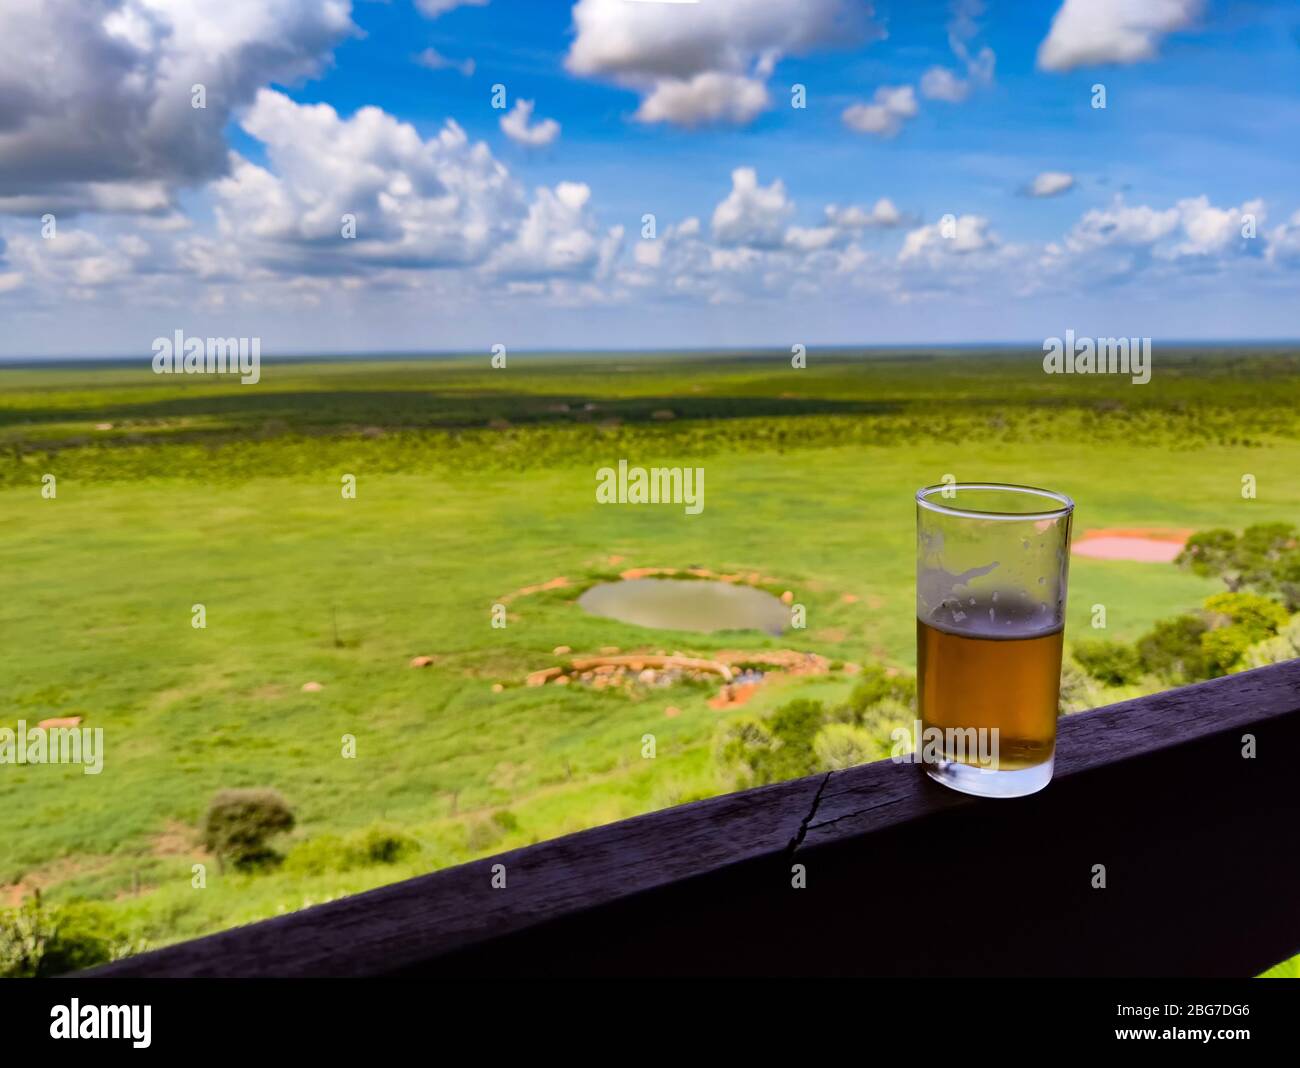 Ein Glas Bier steht auf einem Holzzaun. Im Hintergrund ist ein wunderbarer Blick auf den Tsavo East National Park in Kenia. Stockfoto